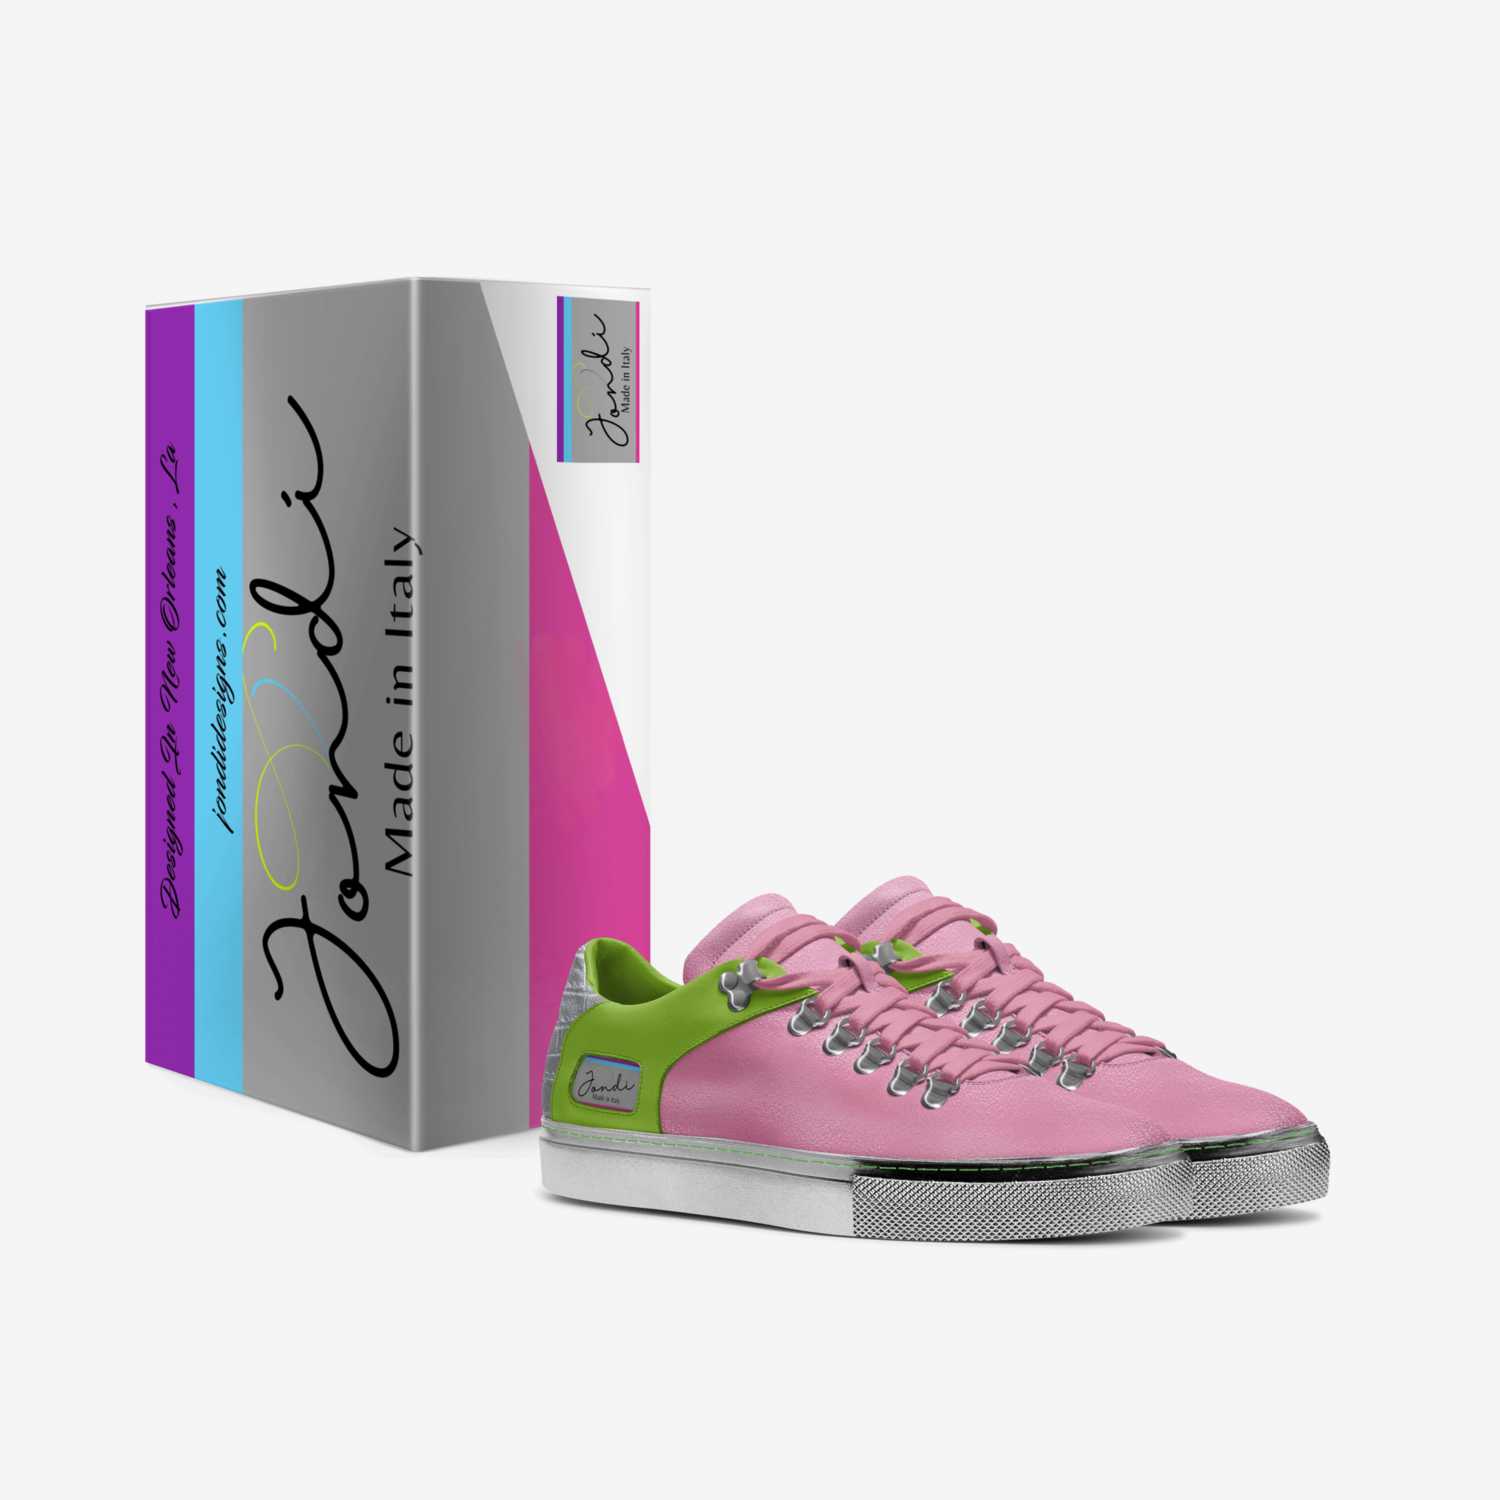 Jondi Geaux BF custom made in Italy shoes by Jonnika Allen | Box view